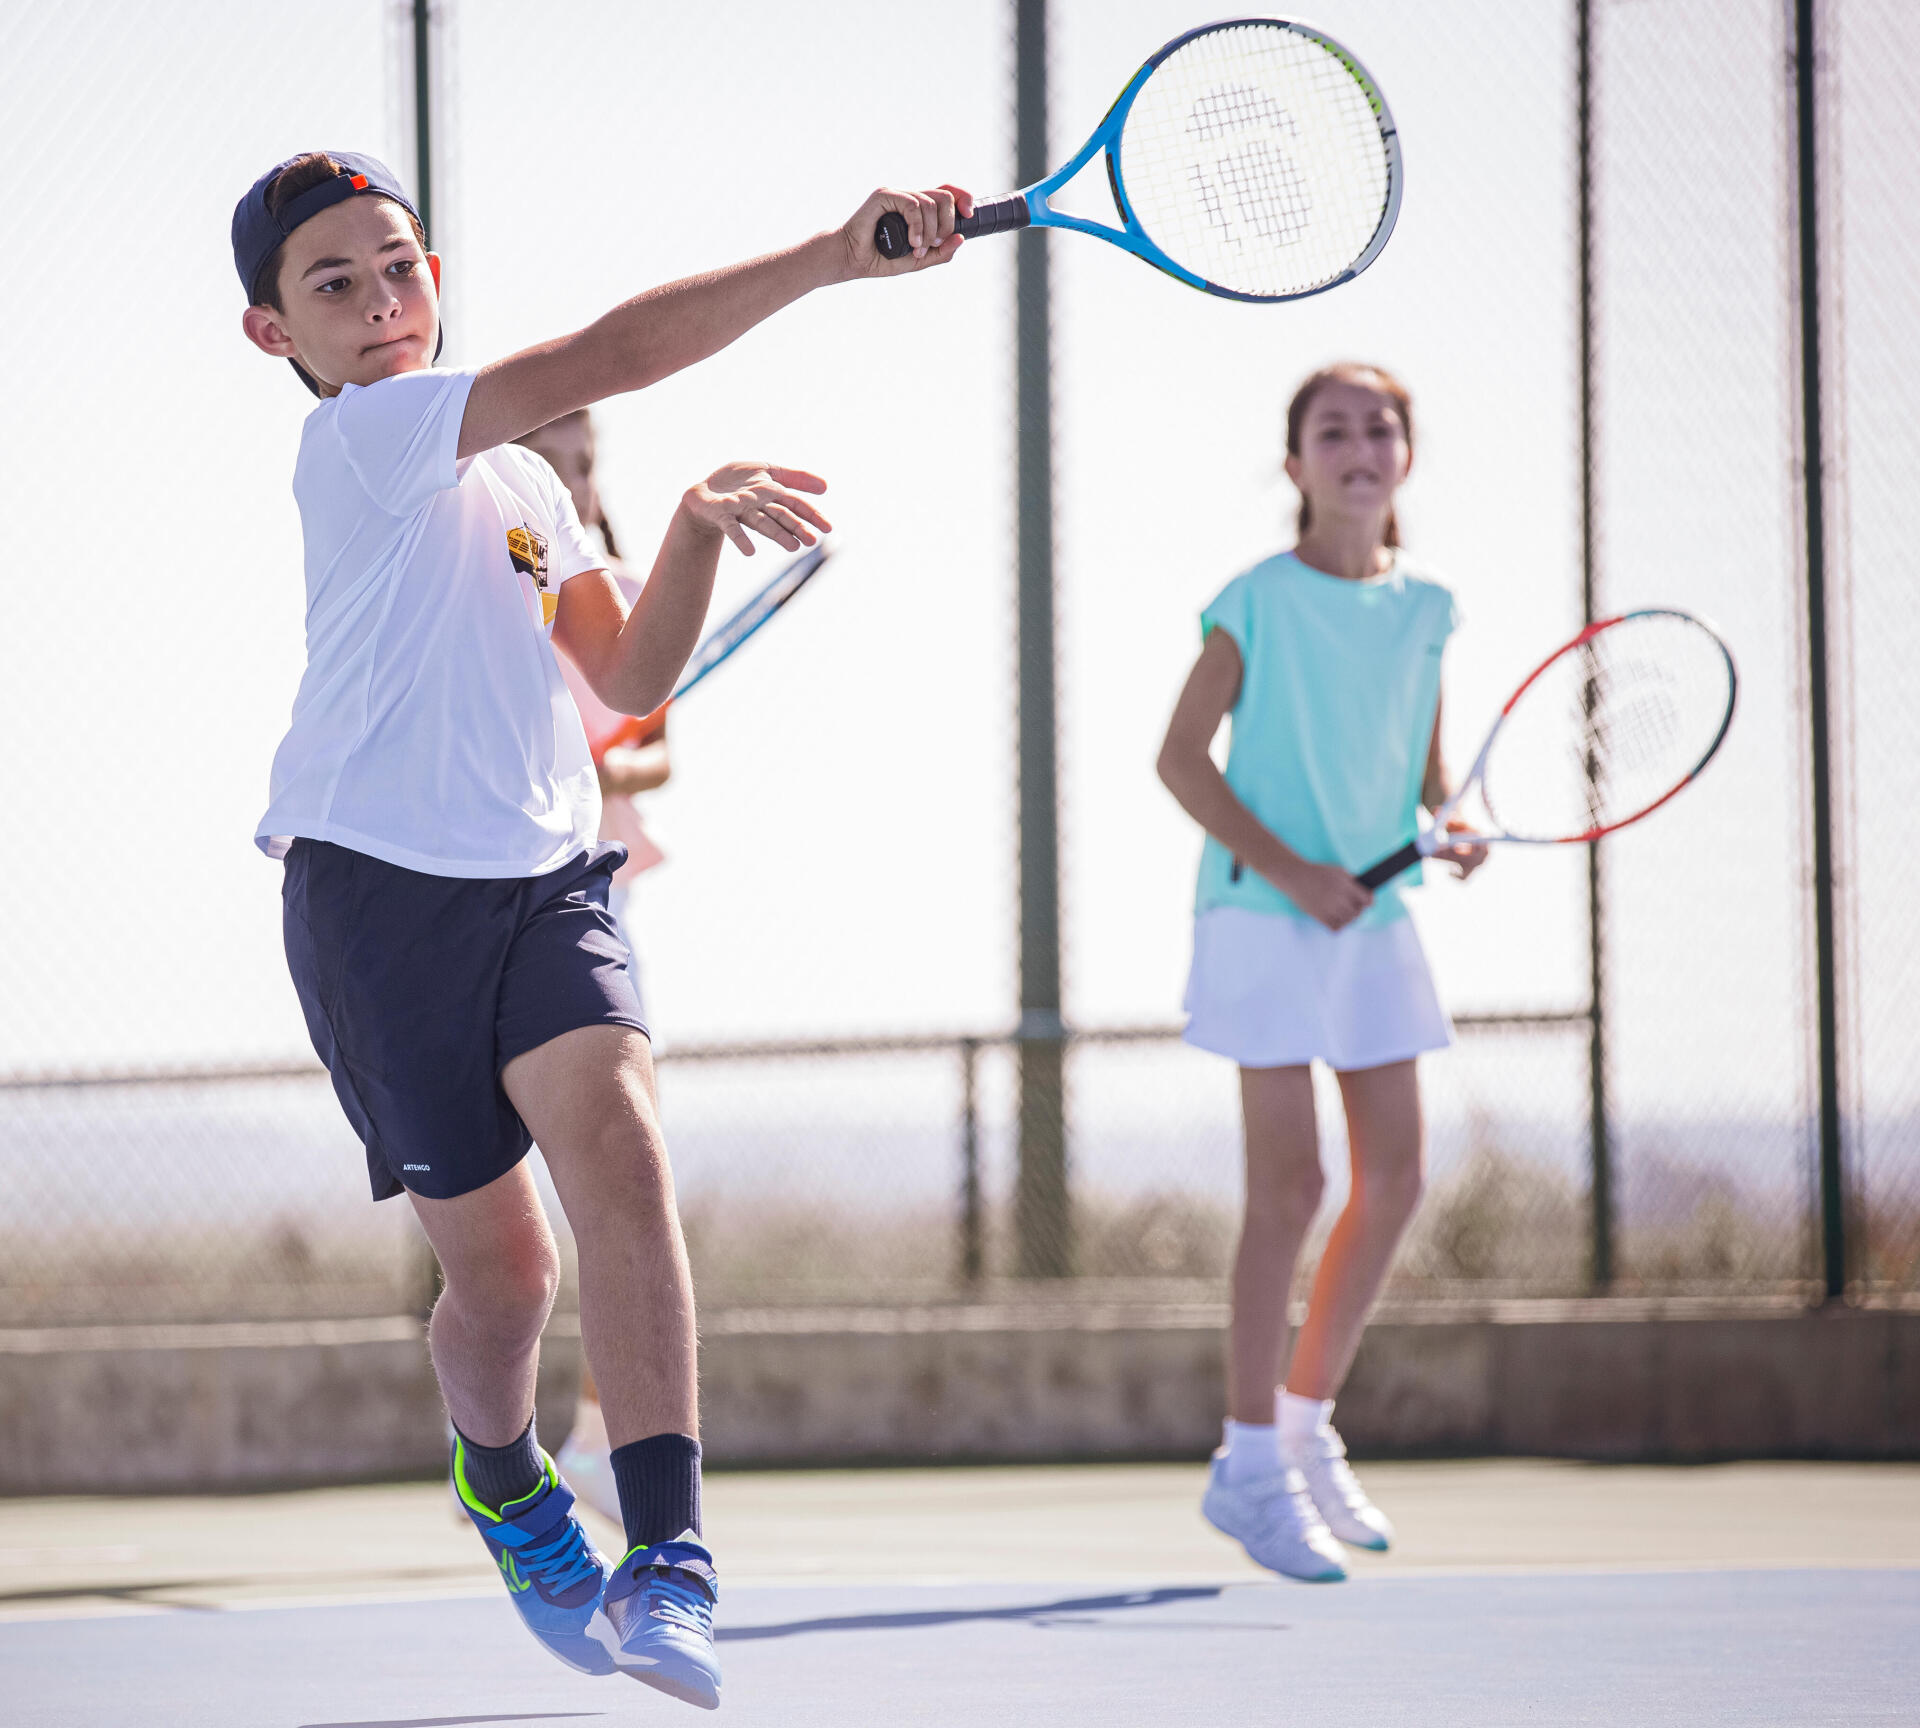 Hur väljer jag tennisracket till mitt barn?